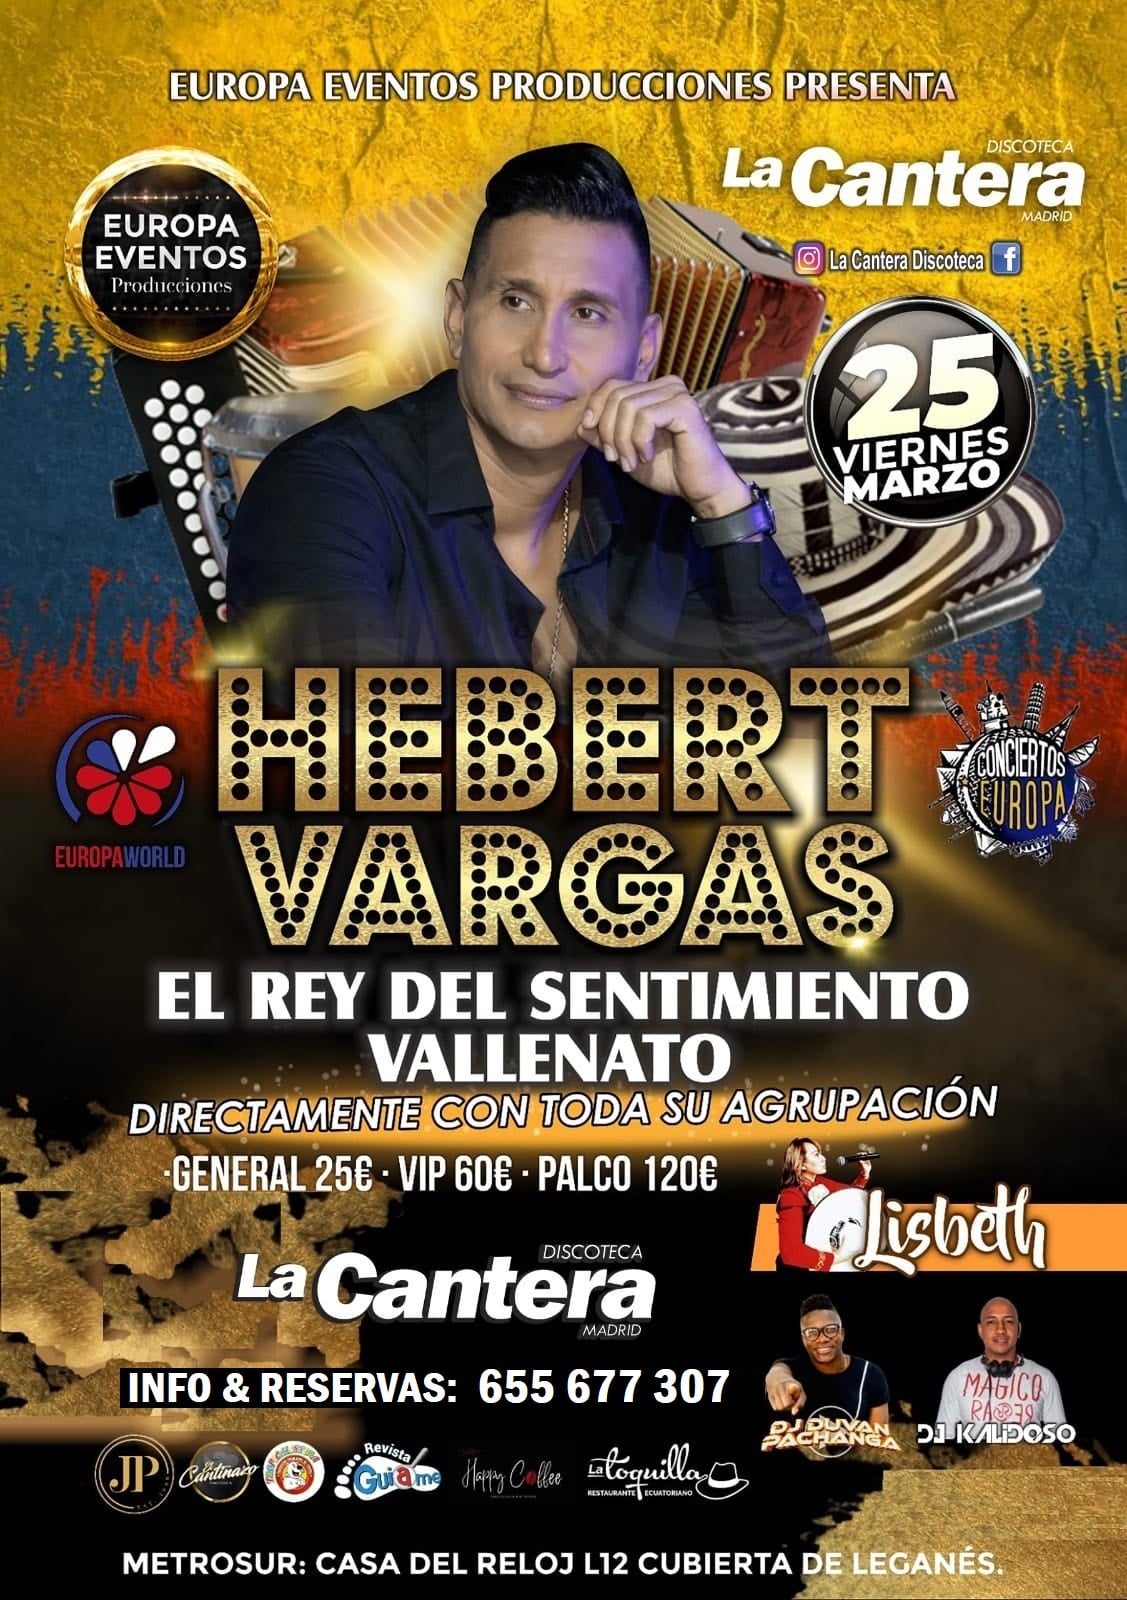 Hebert Vargas Discoteca La Cantera Leganés Madrid